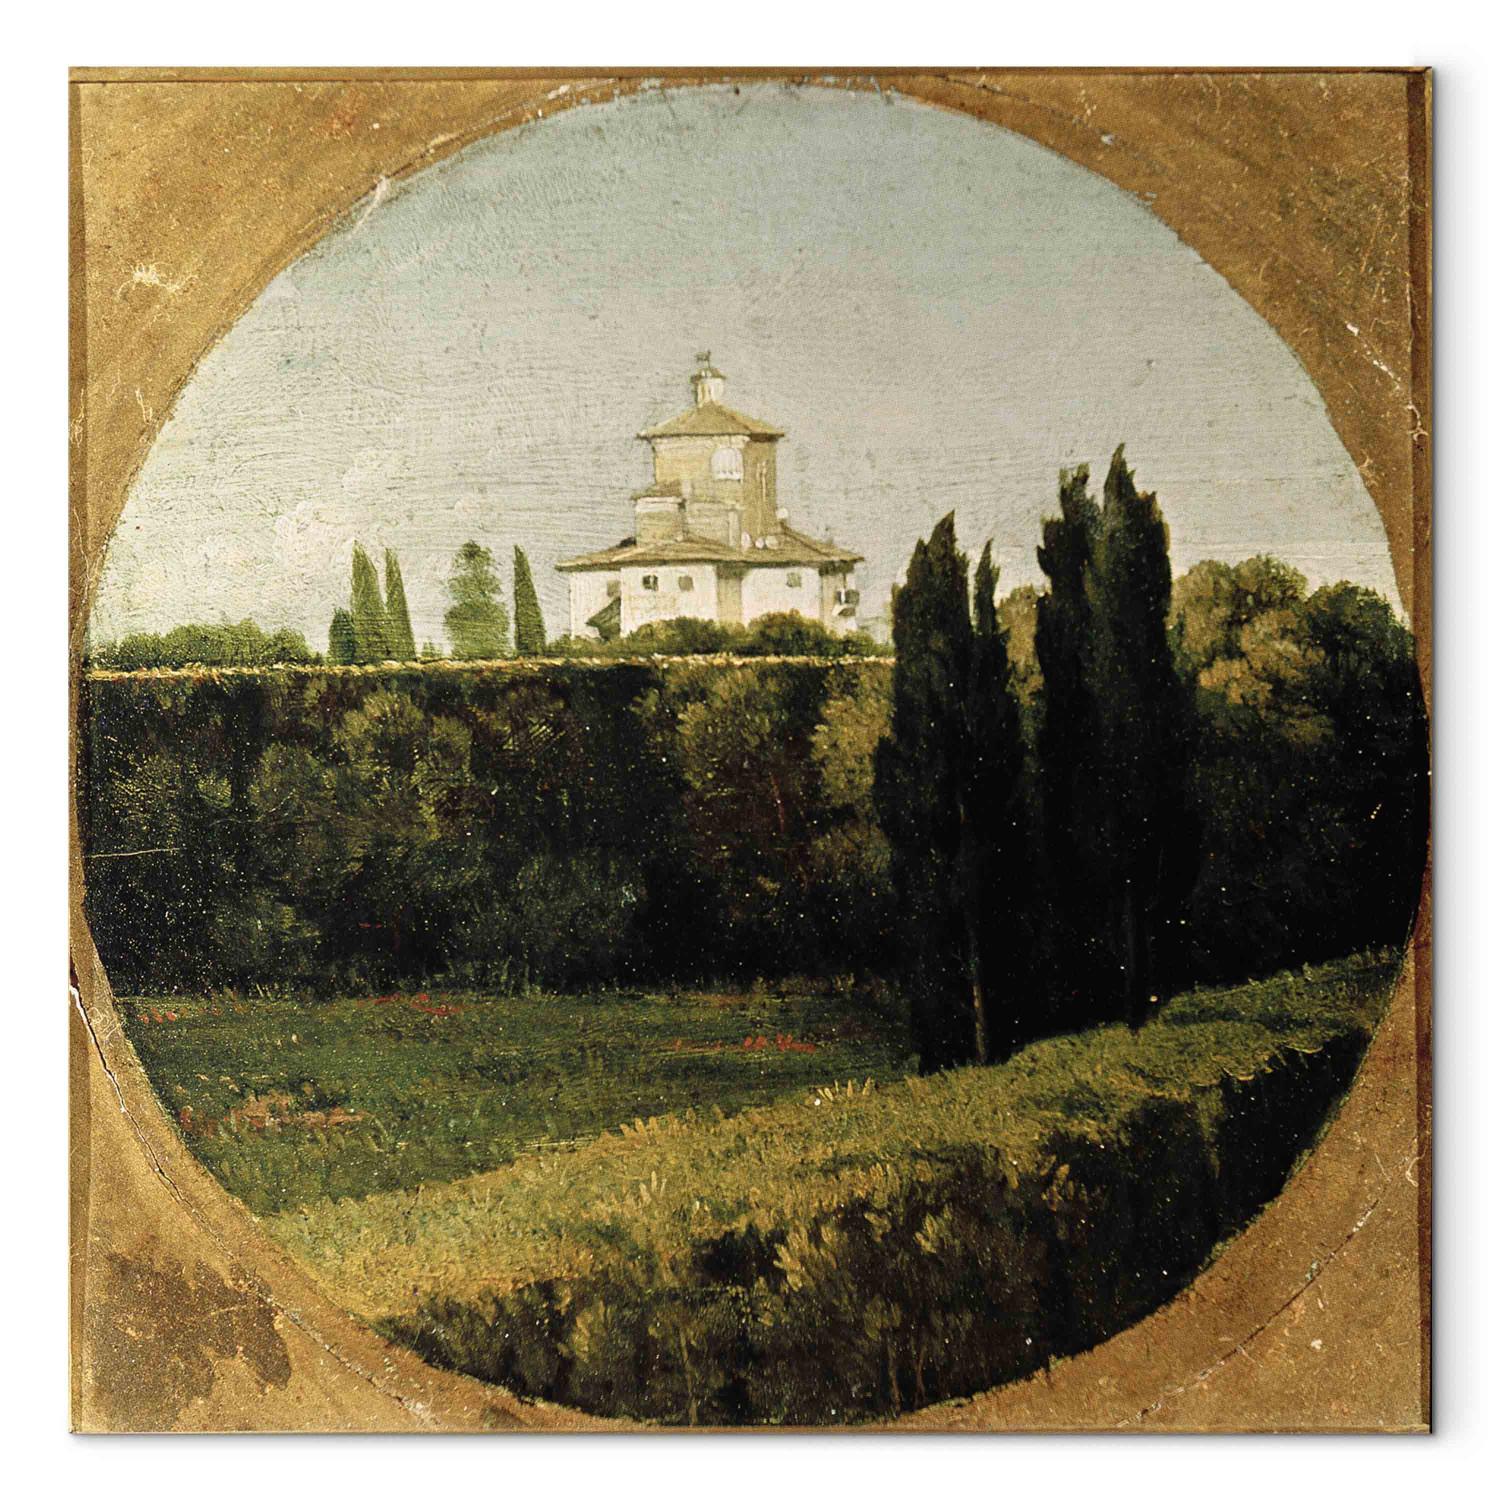 Canvas View of the Villa Medici, Rome